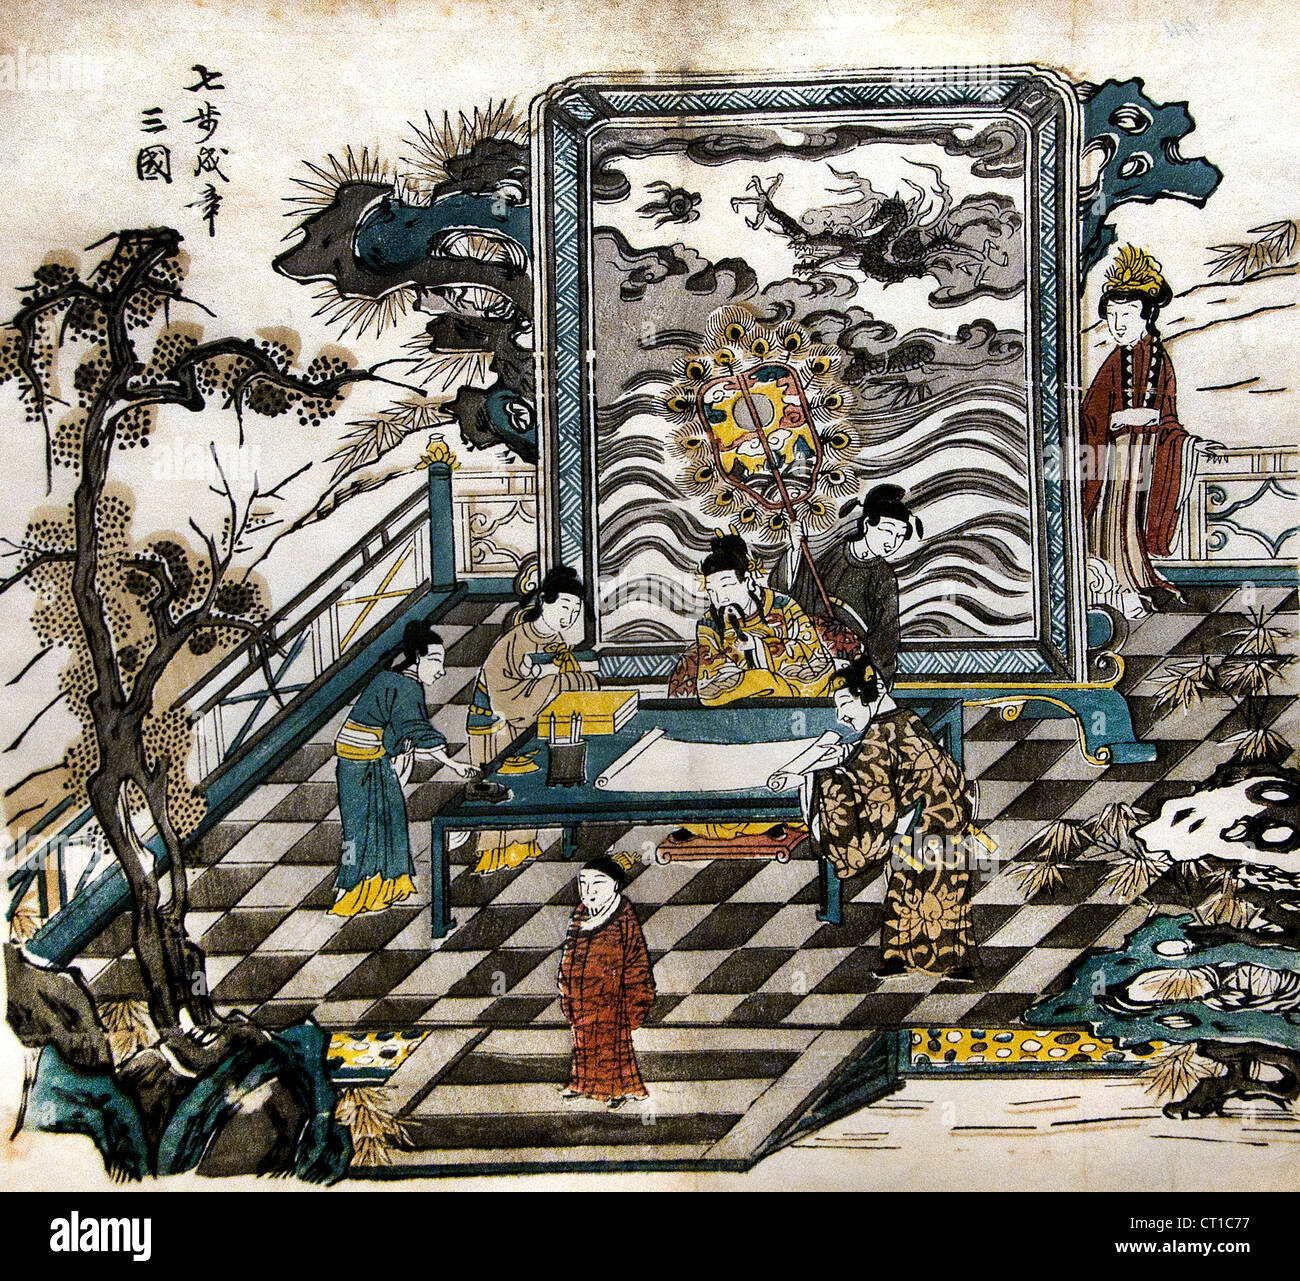 Cao Zhi Qing Poésie Composition de la deuxième moitié du 17e siècle gravure sur bois couleur sur papier Chine chinois Banque D'Images